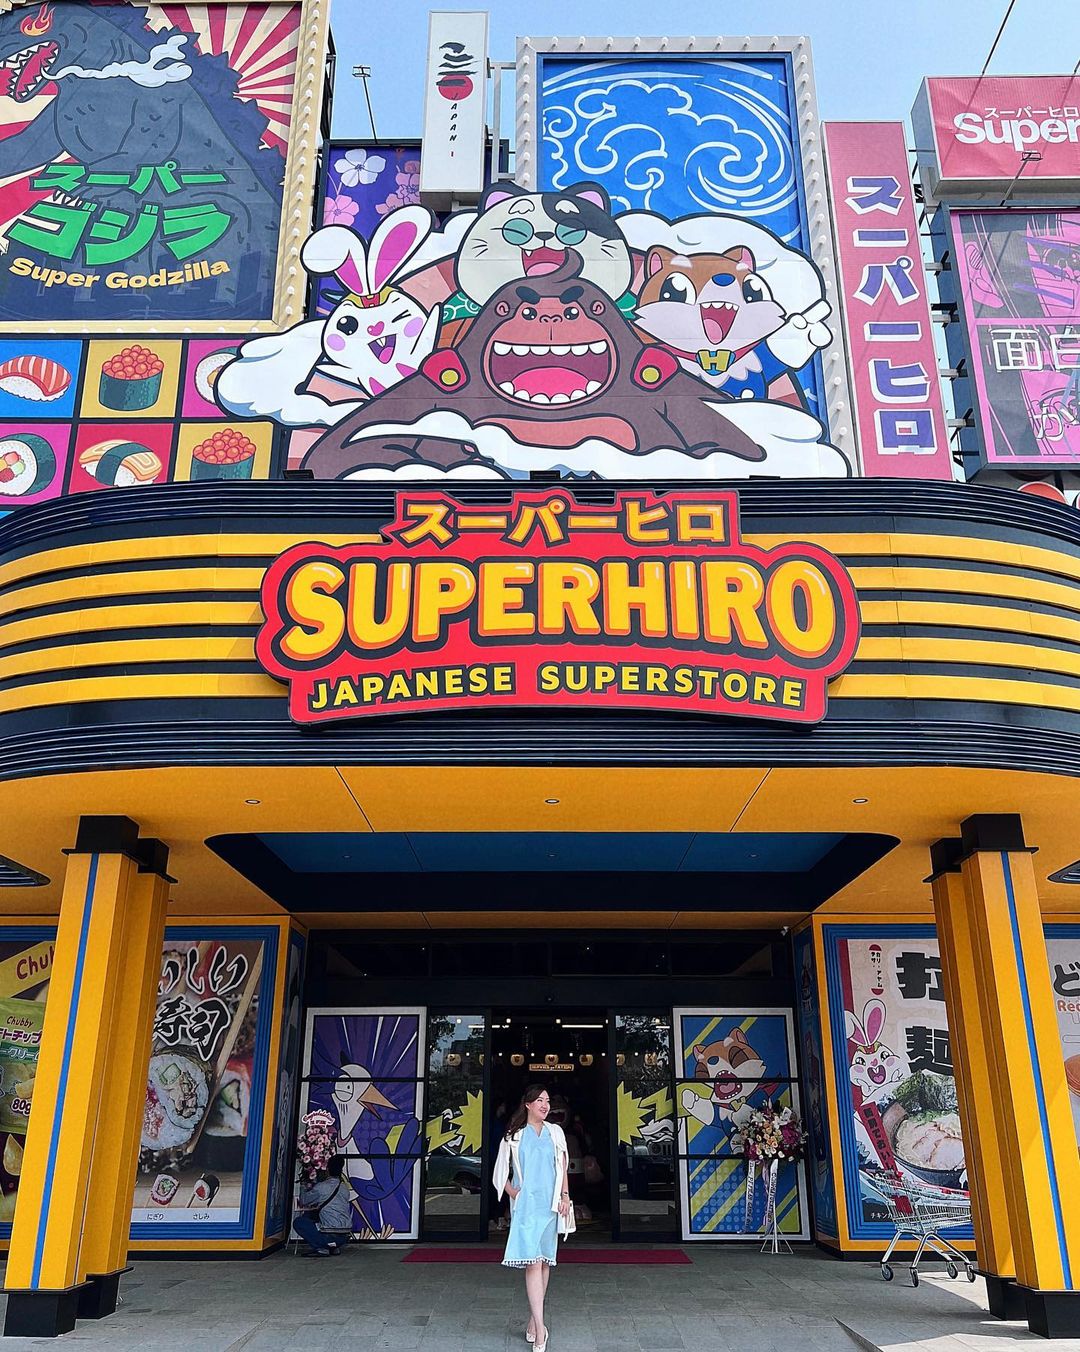 Review Superhiro Japanese Superstore Image From @audreykareninaa